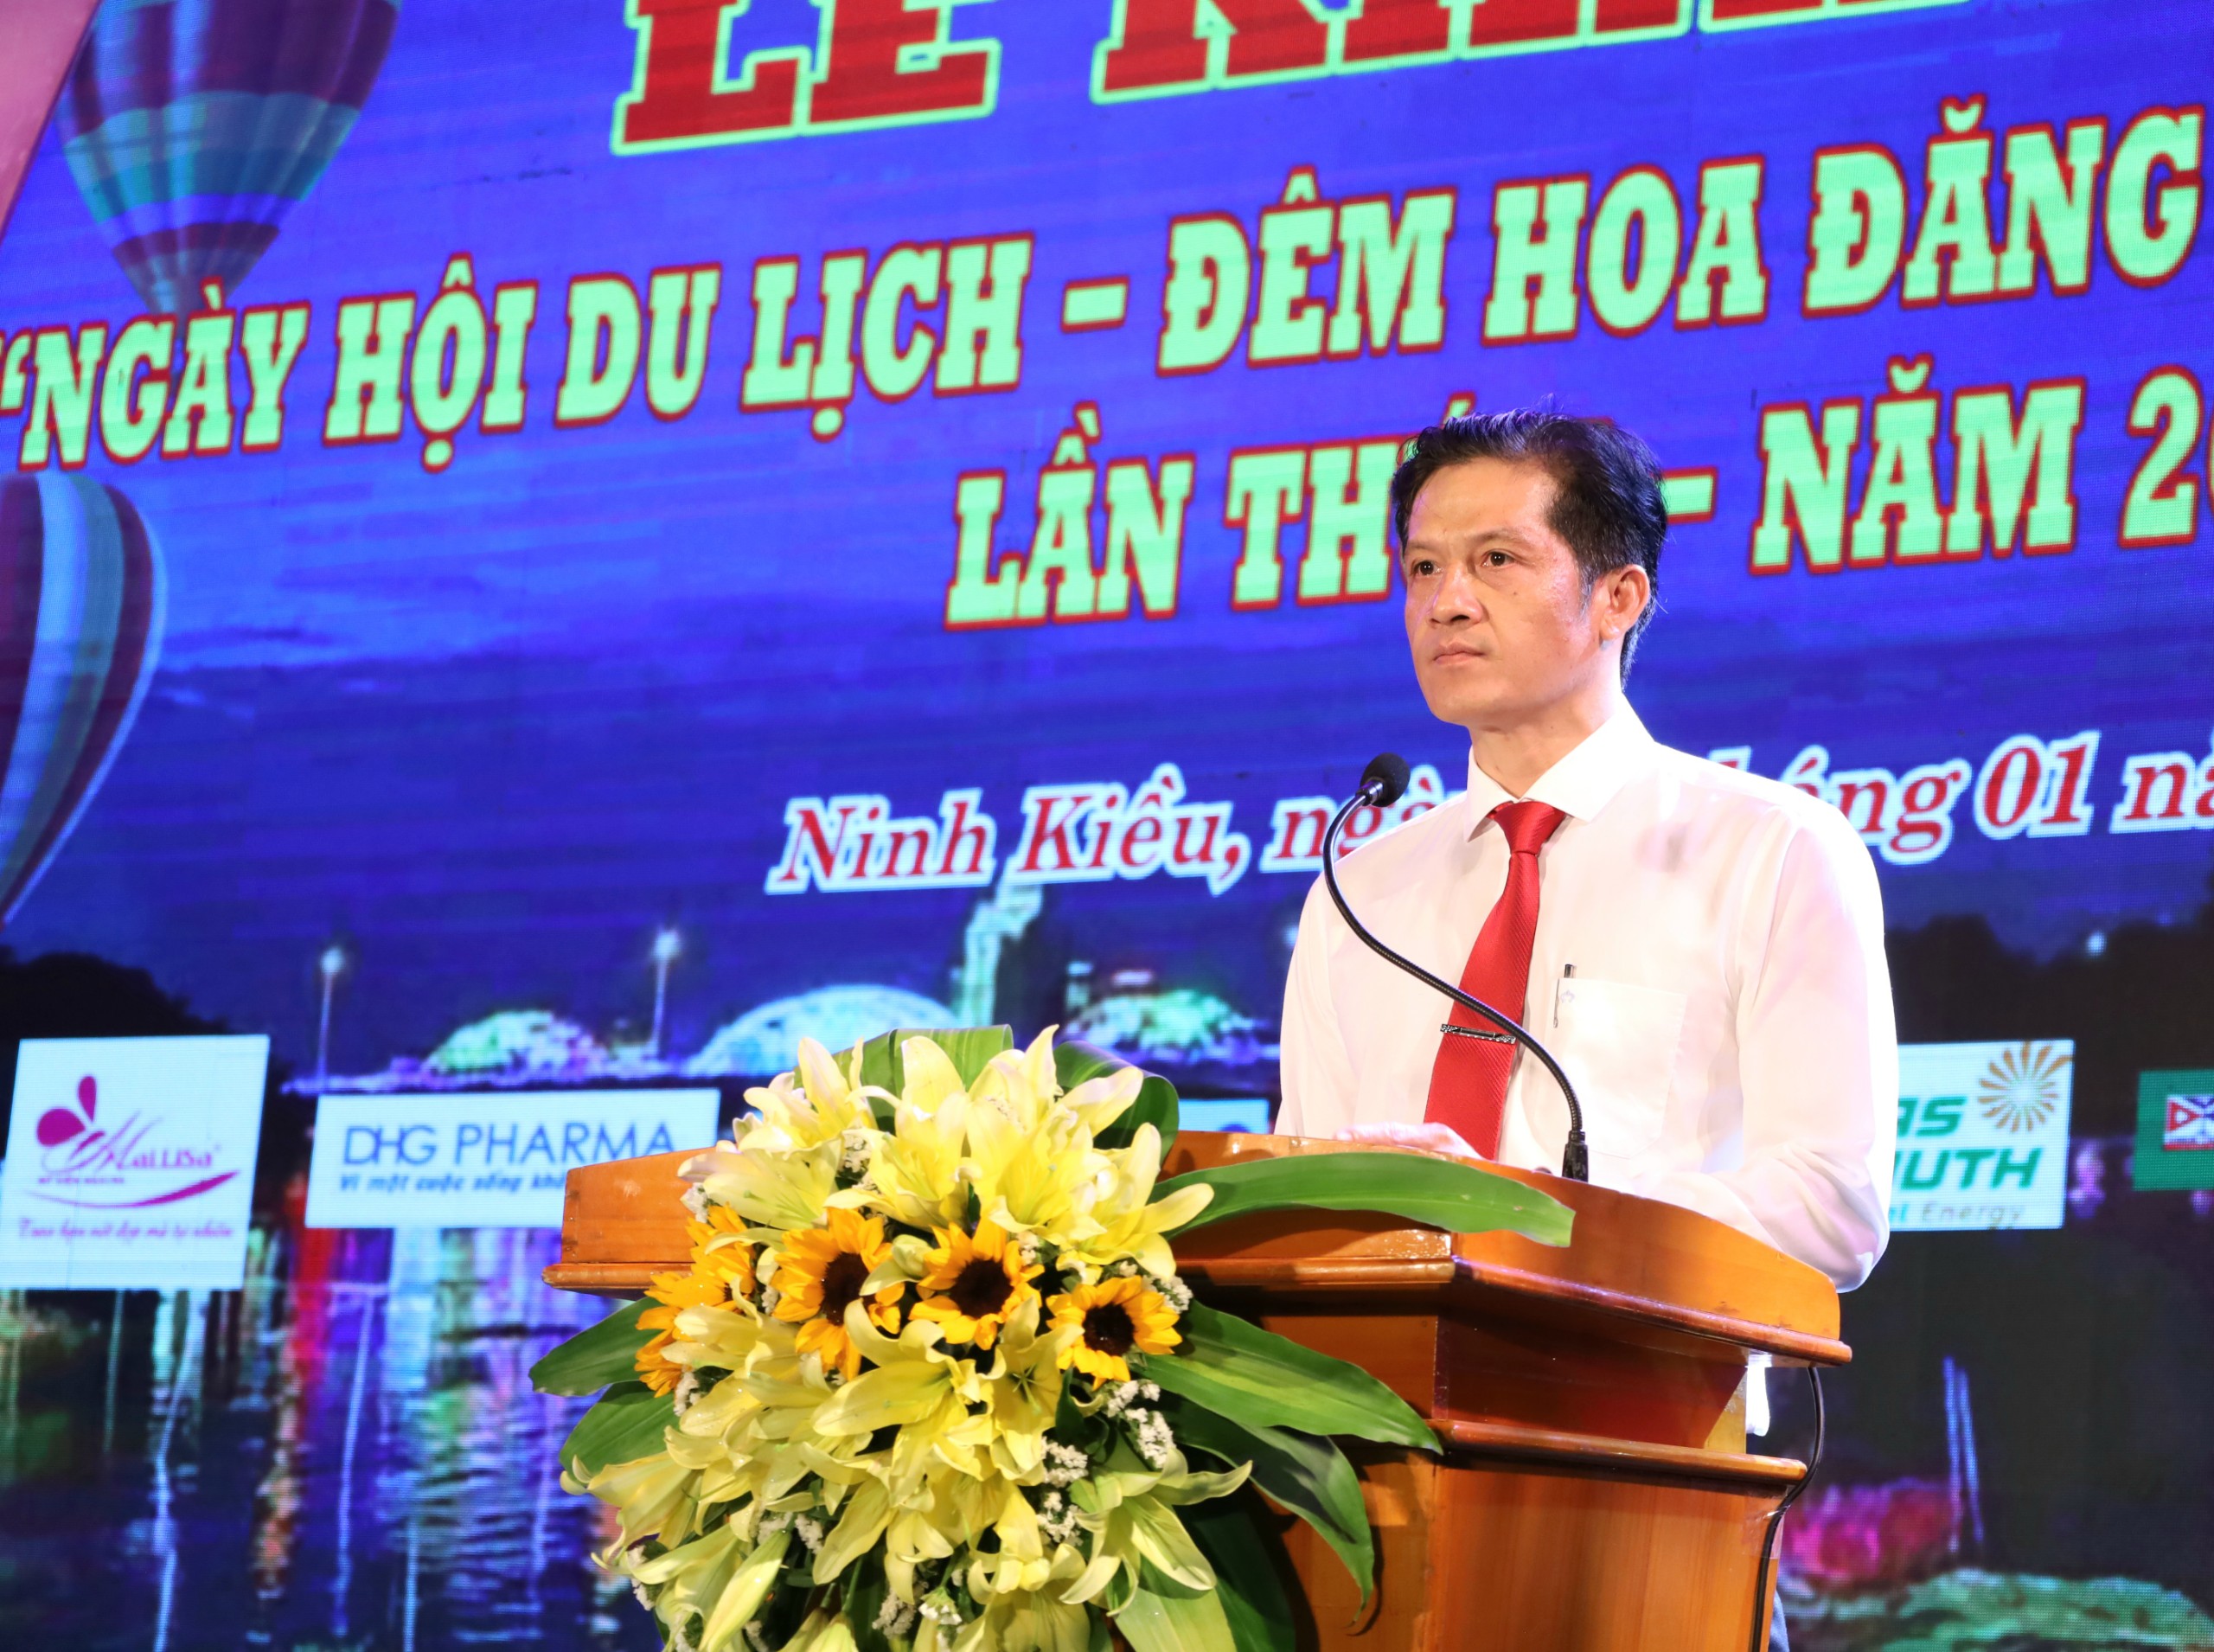 Ông Huỳnh Trung Trứ - Chủ tịch UBND quận Ninh Kiều, TP. Cần Thơ phát biểu khai mạc ngày hội.